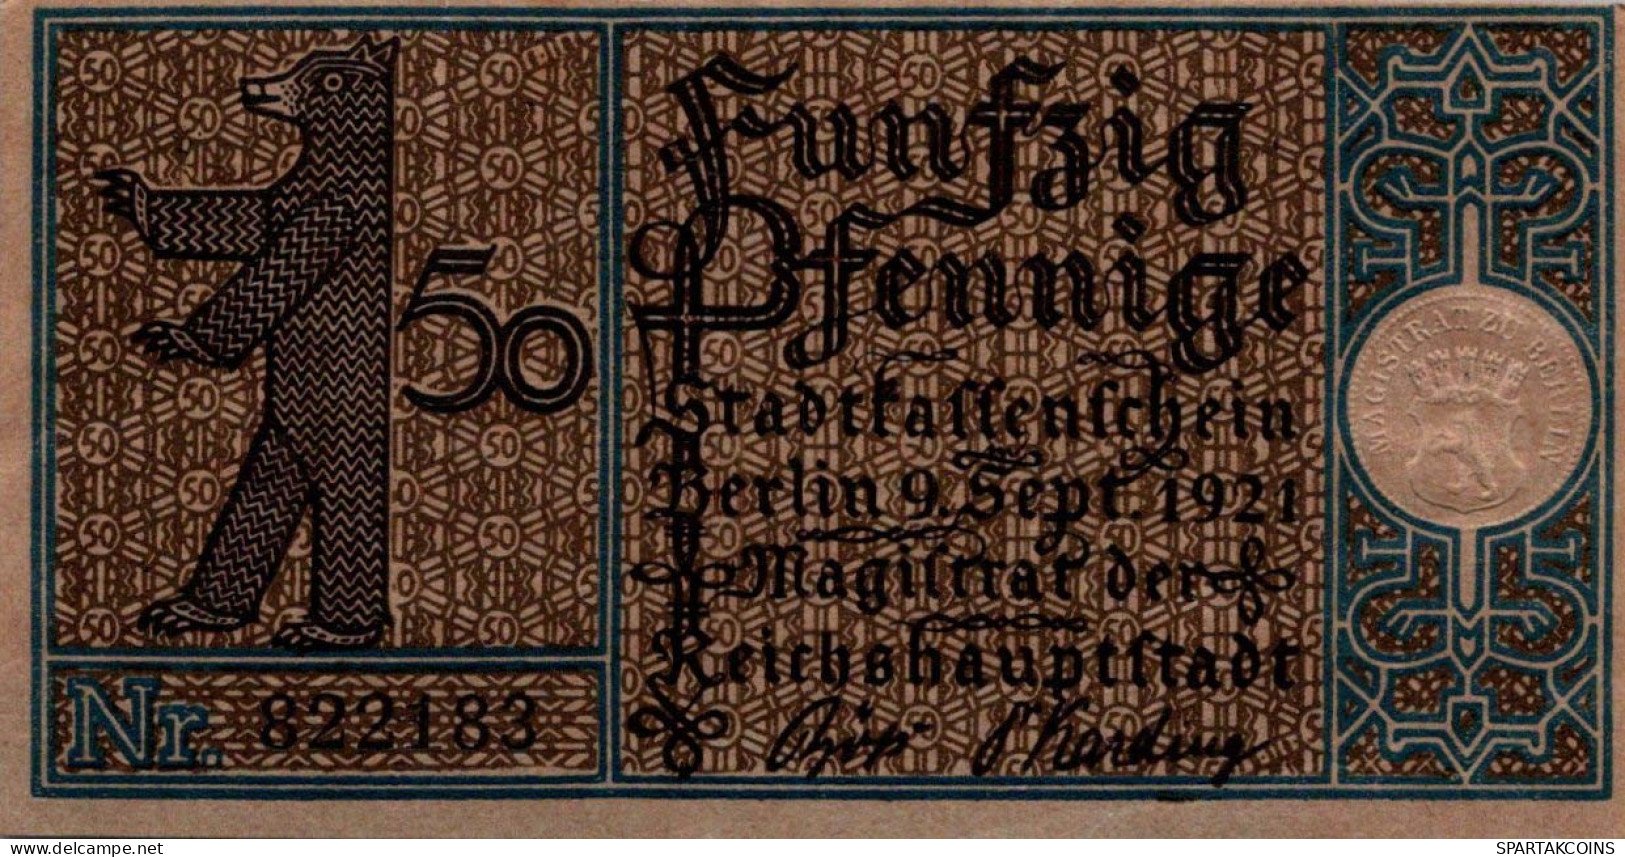 50 PFENNIG 1921 Stadt BERLIN UNC DEUTSCHLAND Notgeld Banknote #PH740 - [11] Emissioni Locali